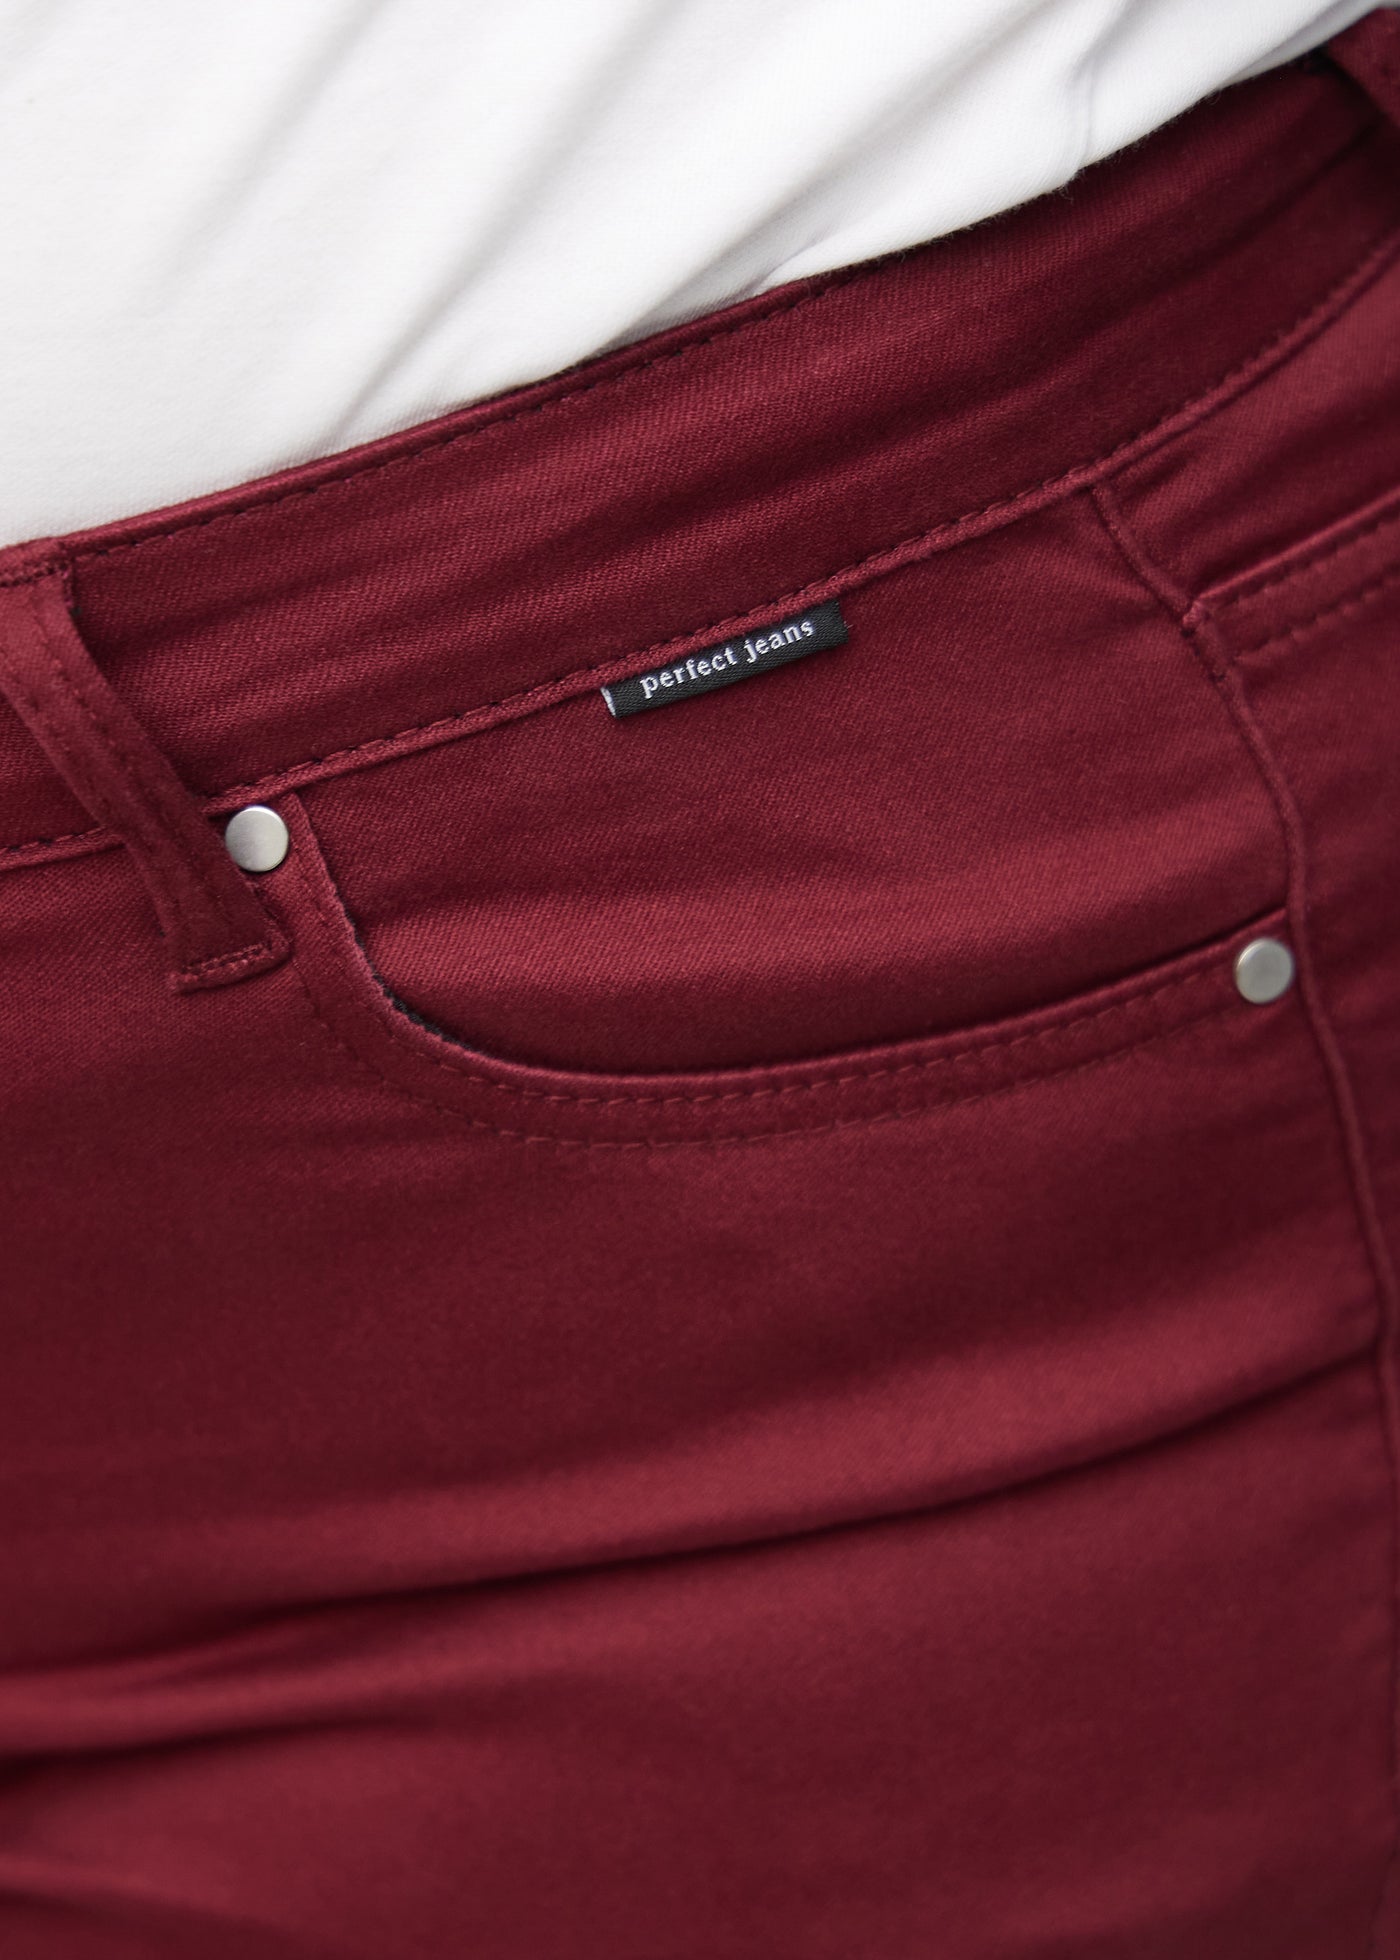 Forlommen på et par mørkerøde jeans, hvor man kan se logoet på en plus-size model.